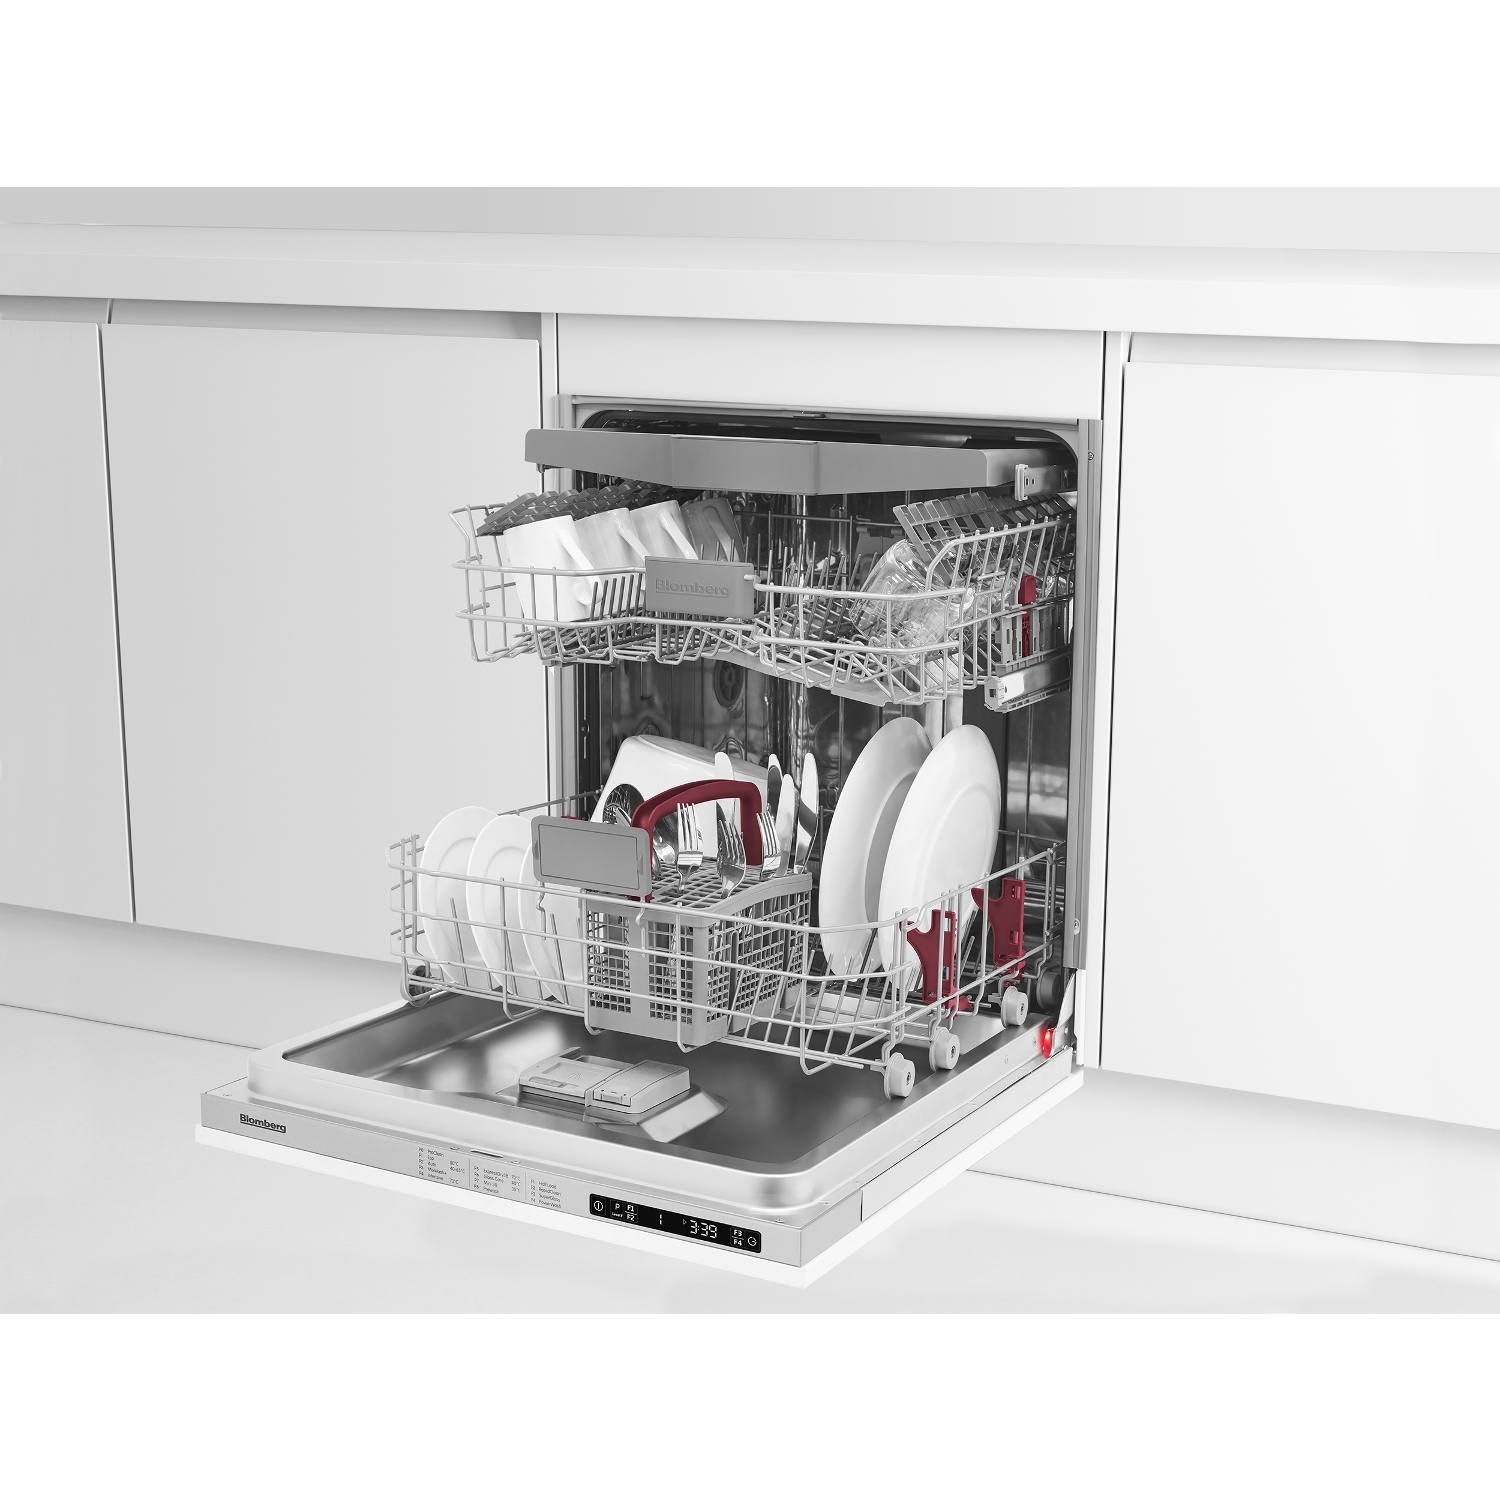 Blomberg LDV42244 Integrated Full Size Dishwasher - 14 Place Settings - 6